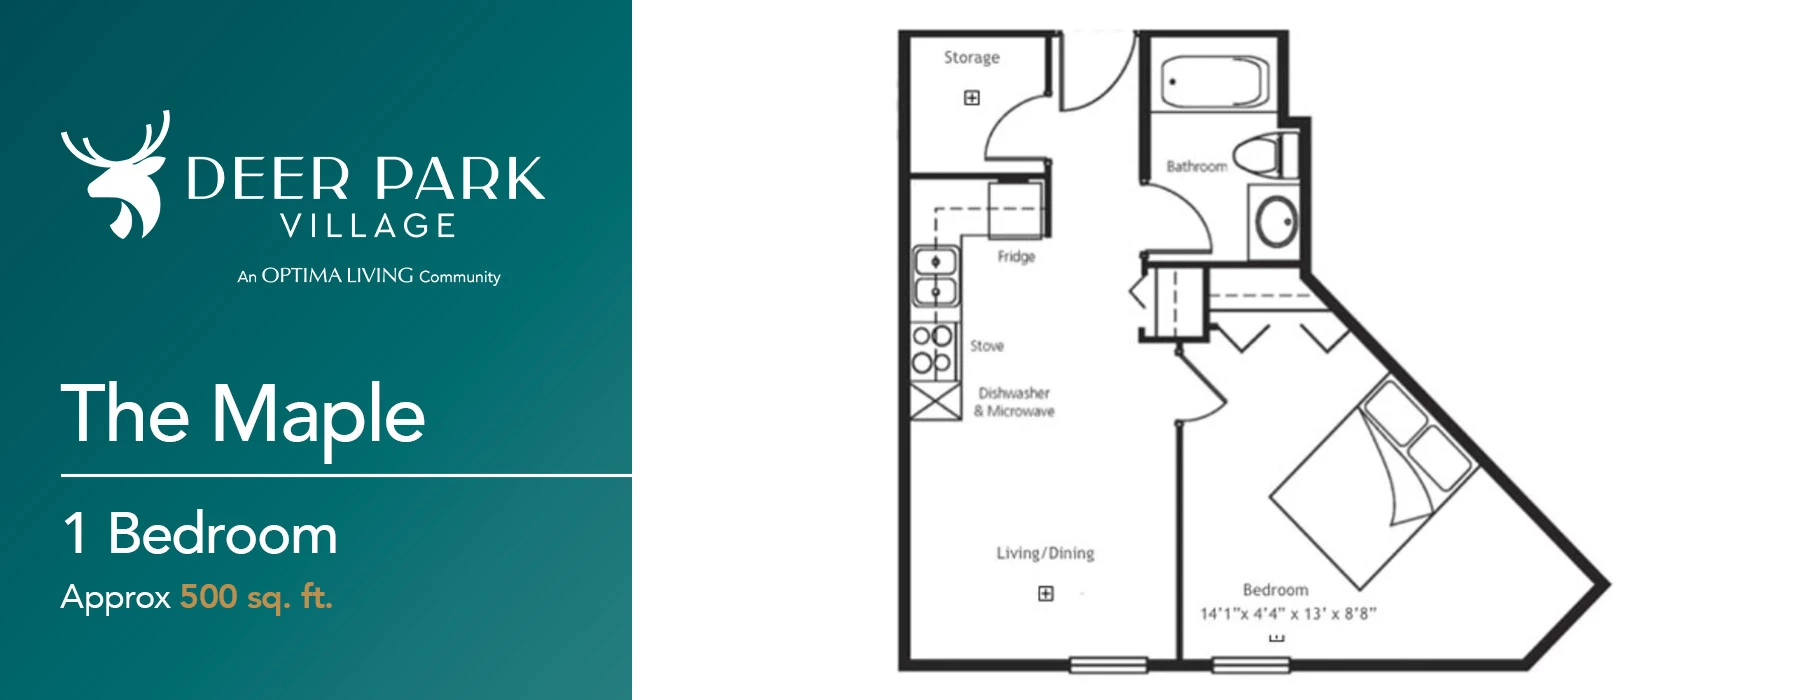 The Maple 1 Bedroom floor plan